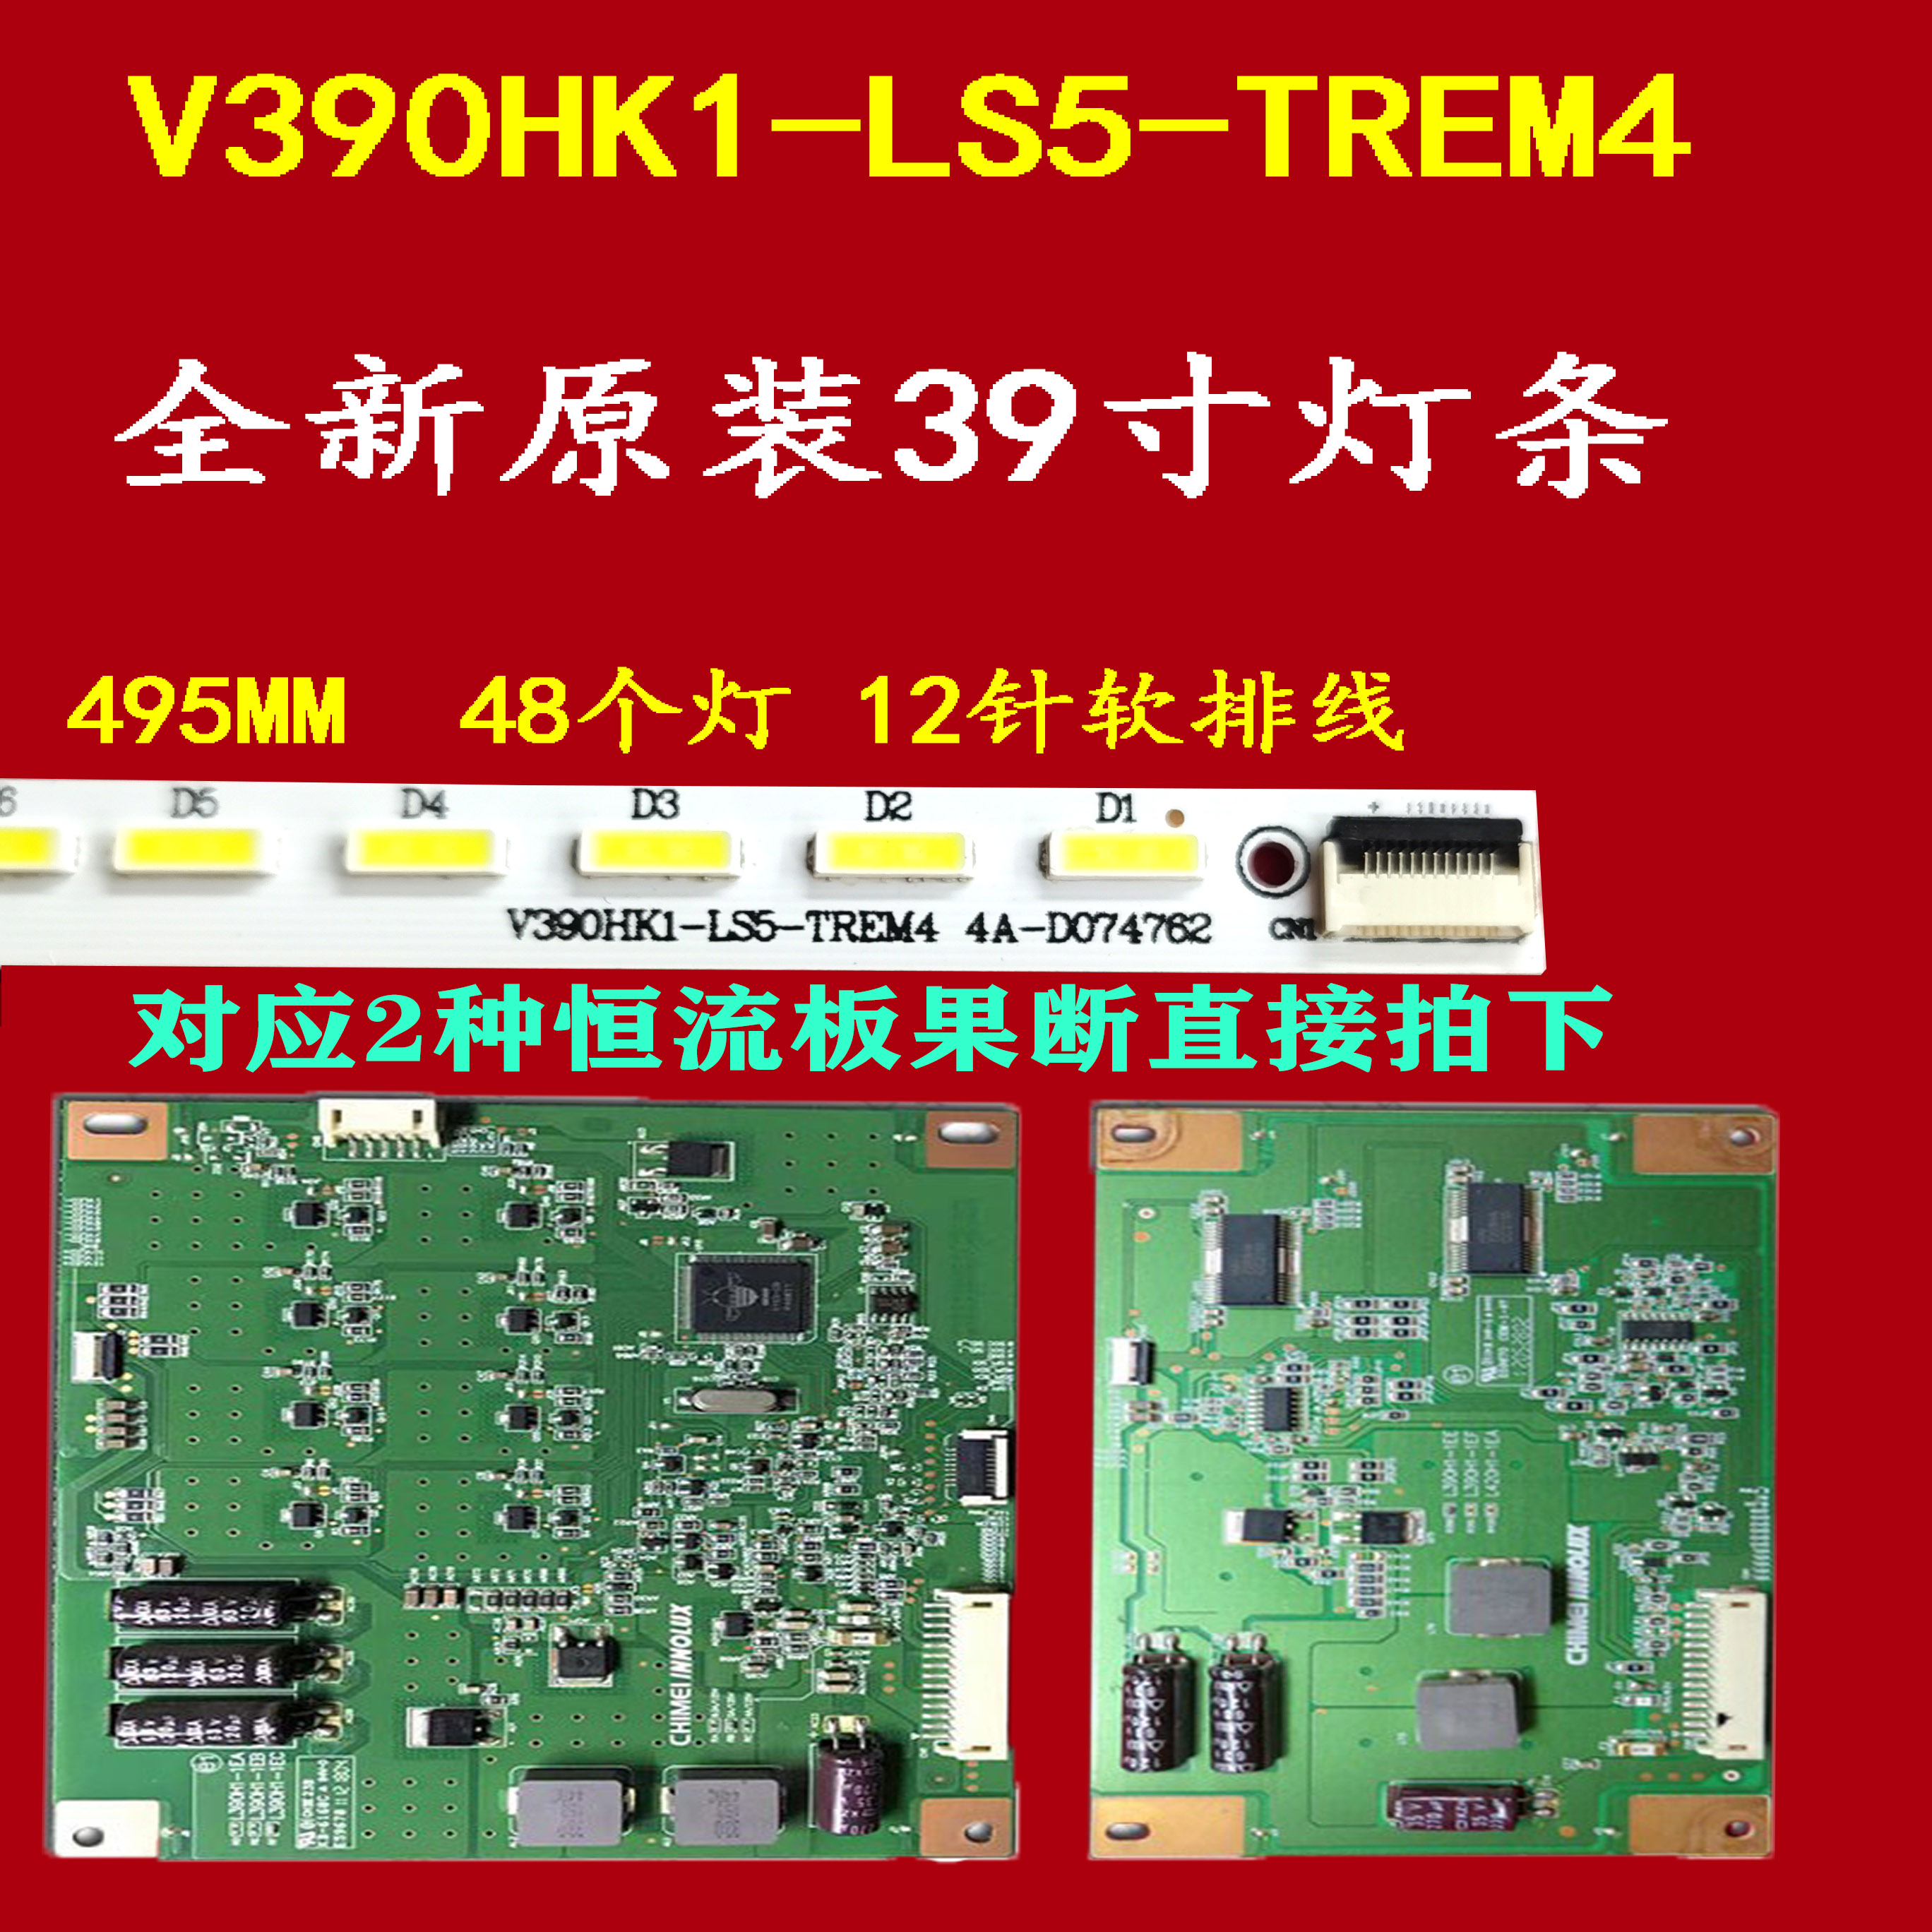 适用海尔LE39A700K背光灯条 配屏V390HK1-LS5-TREM4 ex1 电子元器件市场 显示屏/LCD液晶屏/LED屏/TFT屏 原图主图